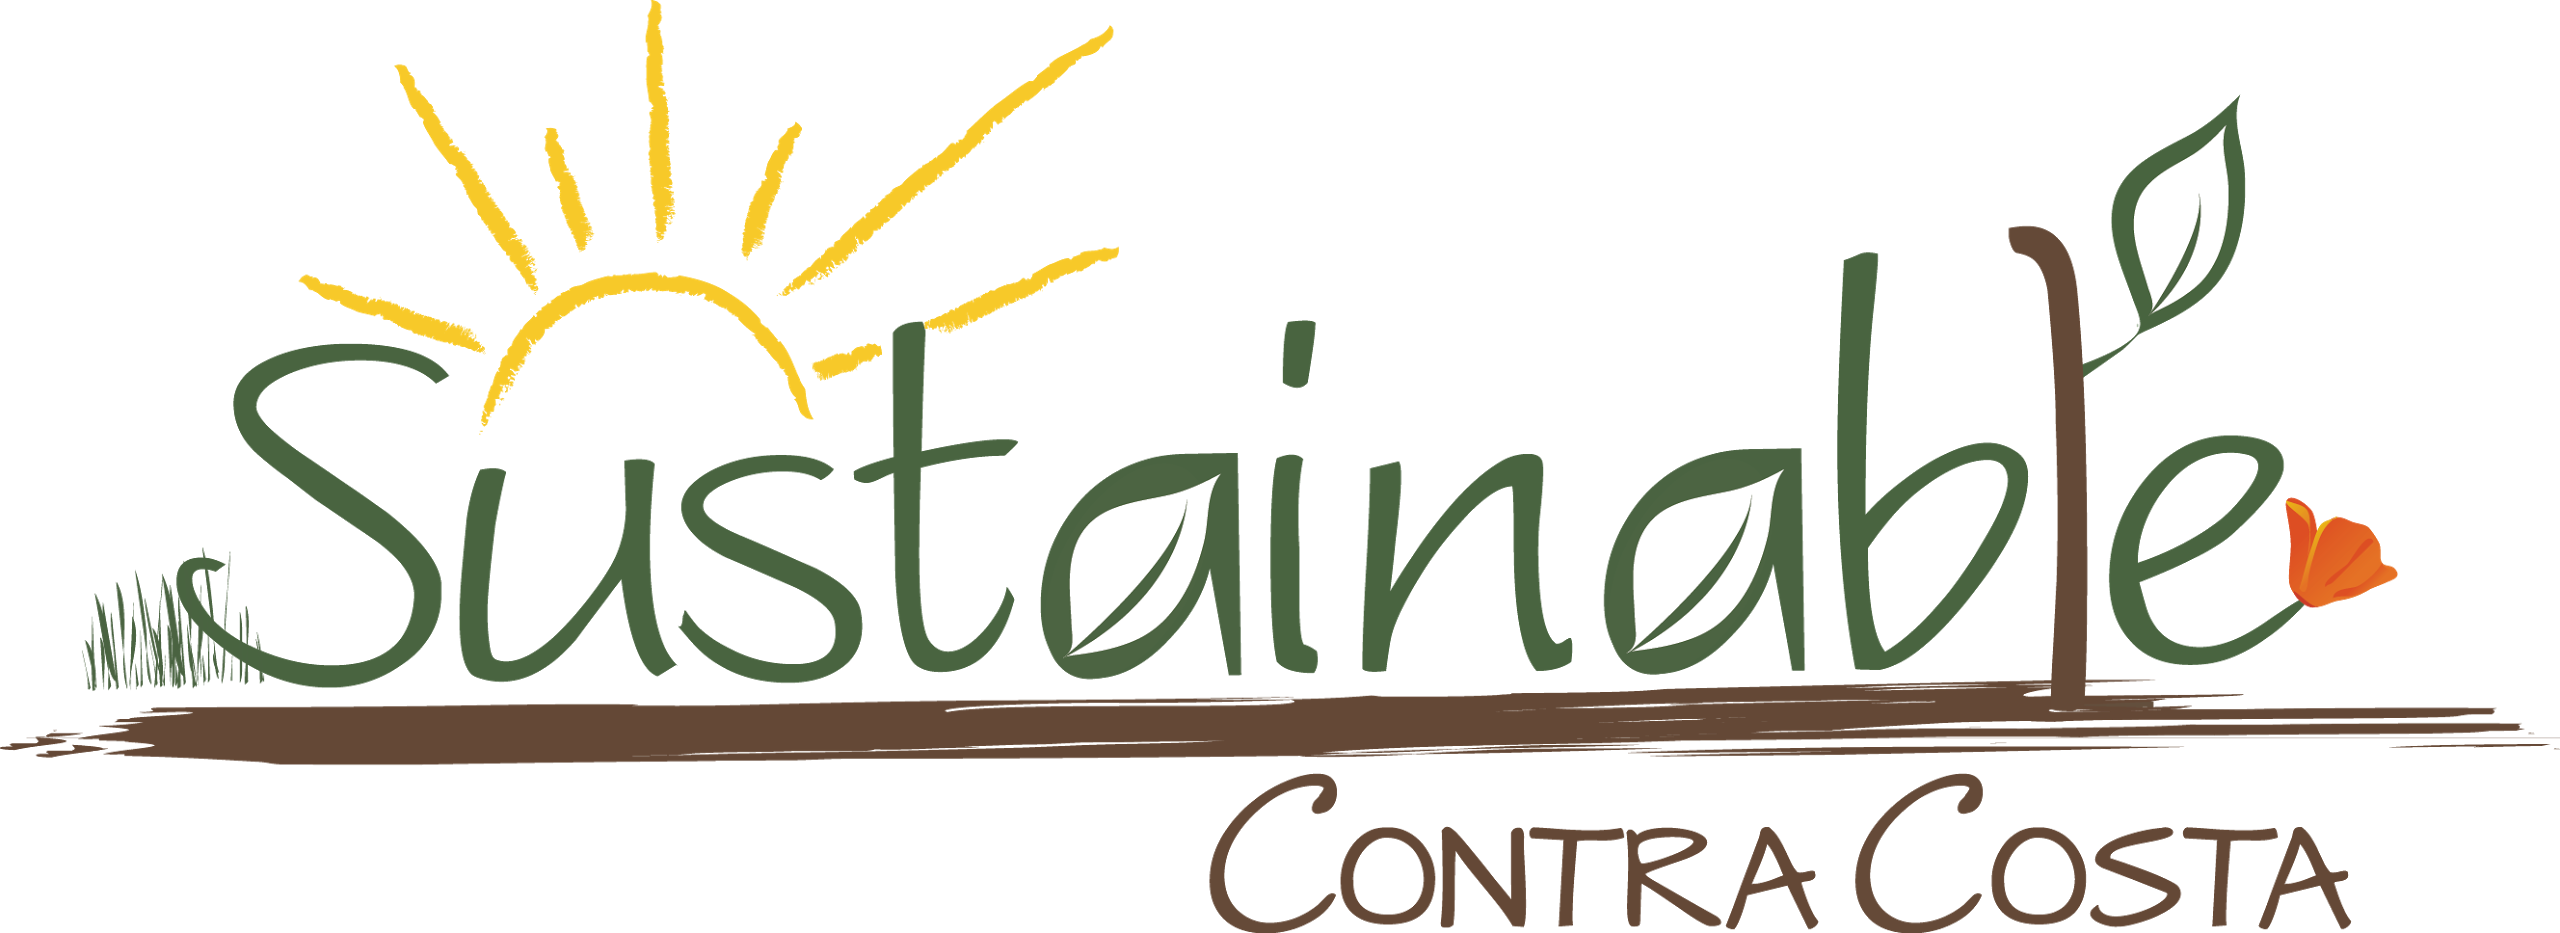 الشعار ، يقول كونترا كوستا المستدامة ، يظهر رسمًا توضيحيًا لتربة الحديقة ، والنبات ، والزهرة ، وأشعة الشمس